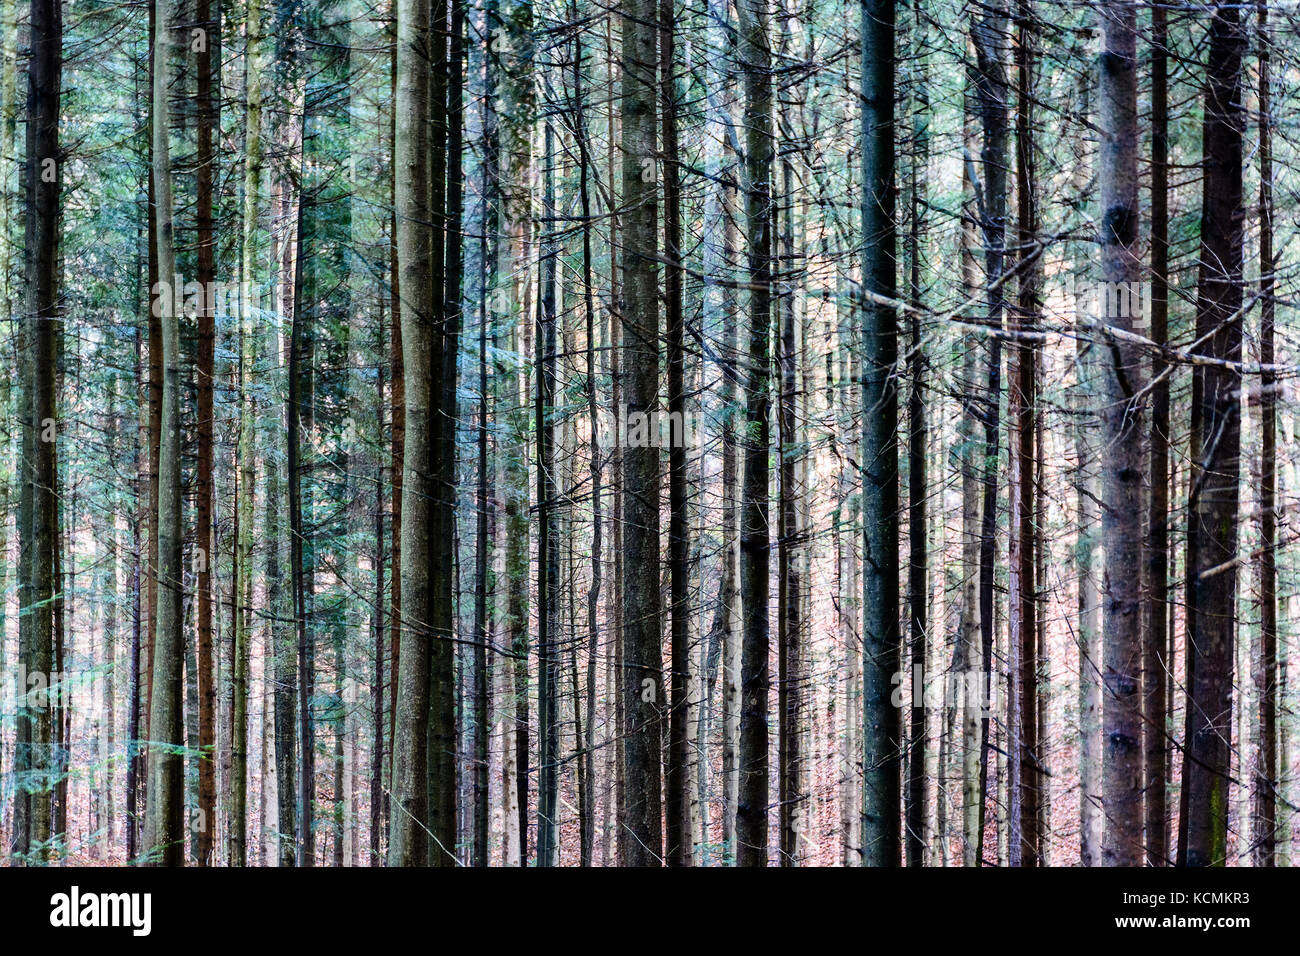 Résumé de l'exposition multiple couleur image artistique d'arbres dans une forêt, modèle extérieur naturel surréaliste Banque D'Images